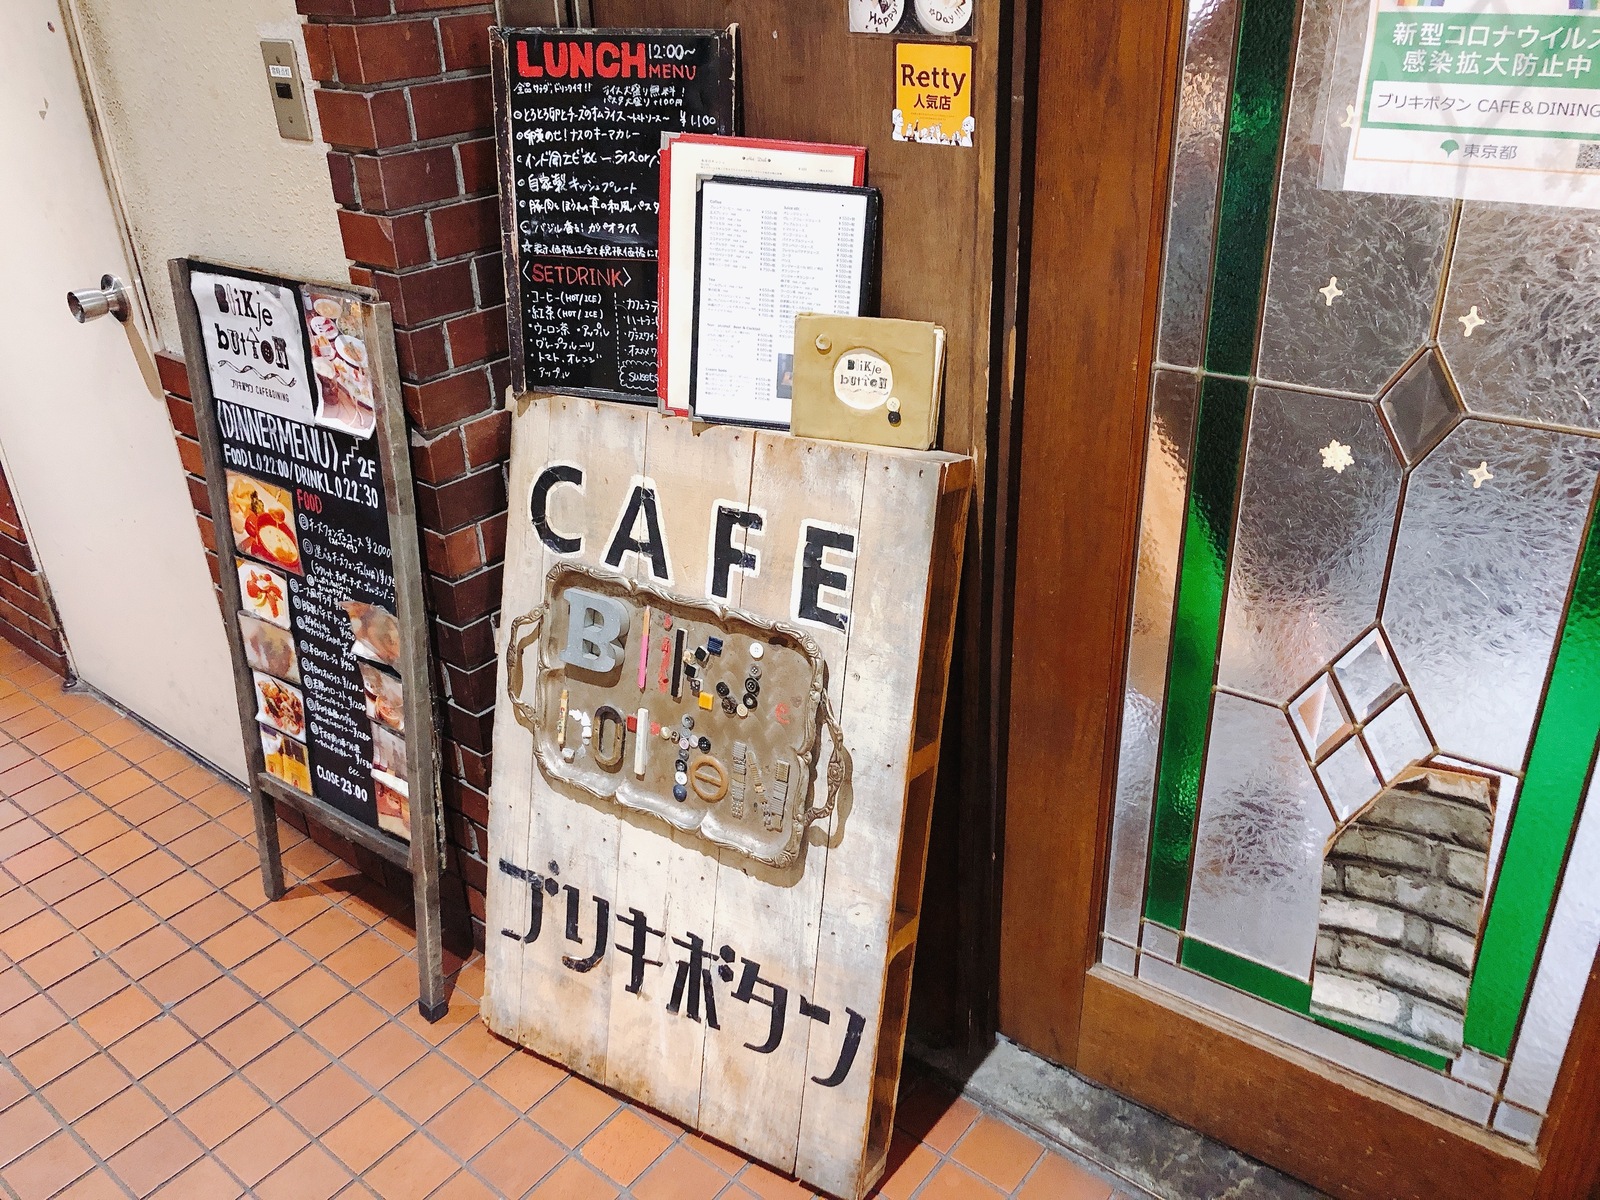 下北沢にあるカフェ「ブリキボタン」ランチで行ってみた感想・レビューのアイキャッチ画像